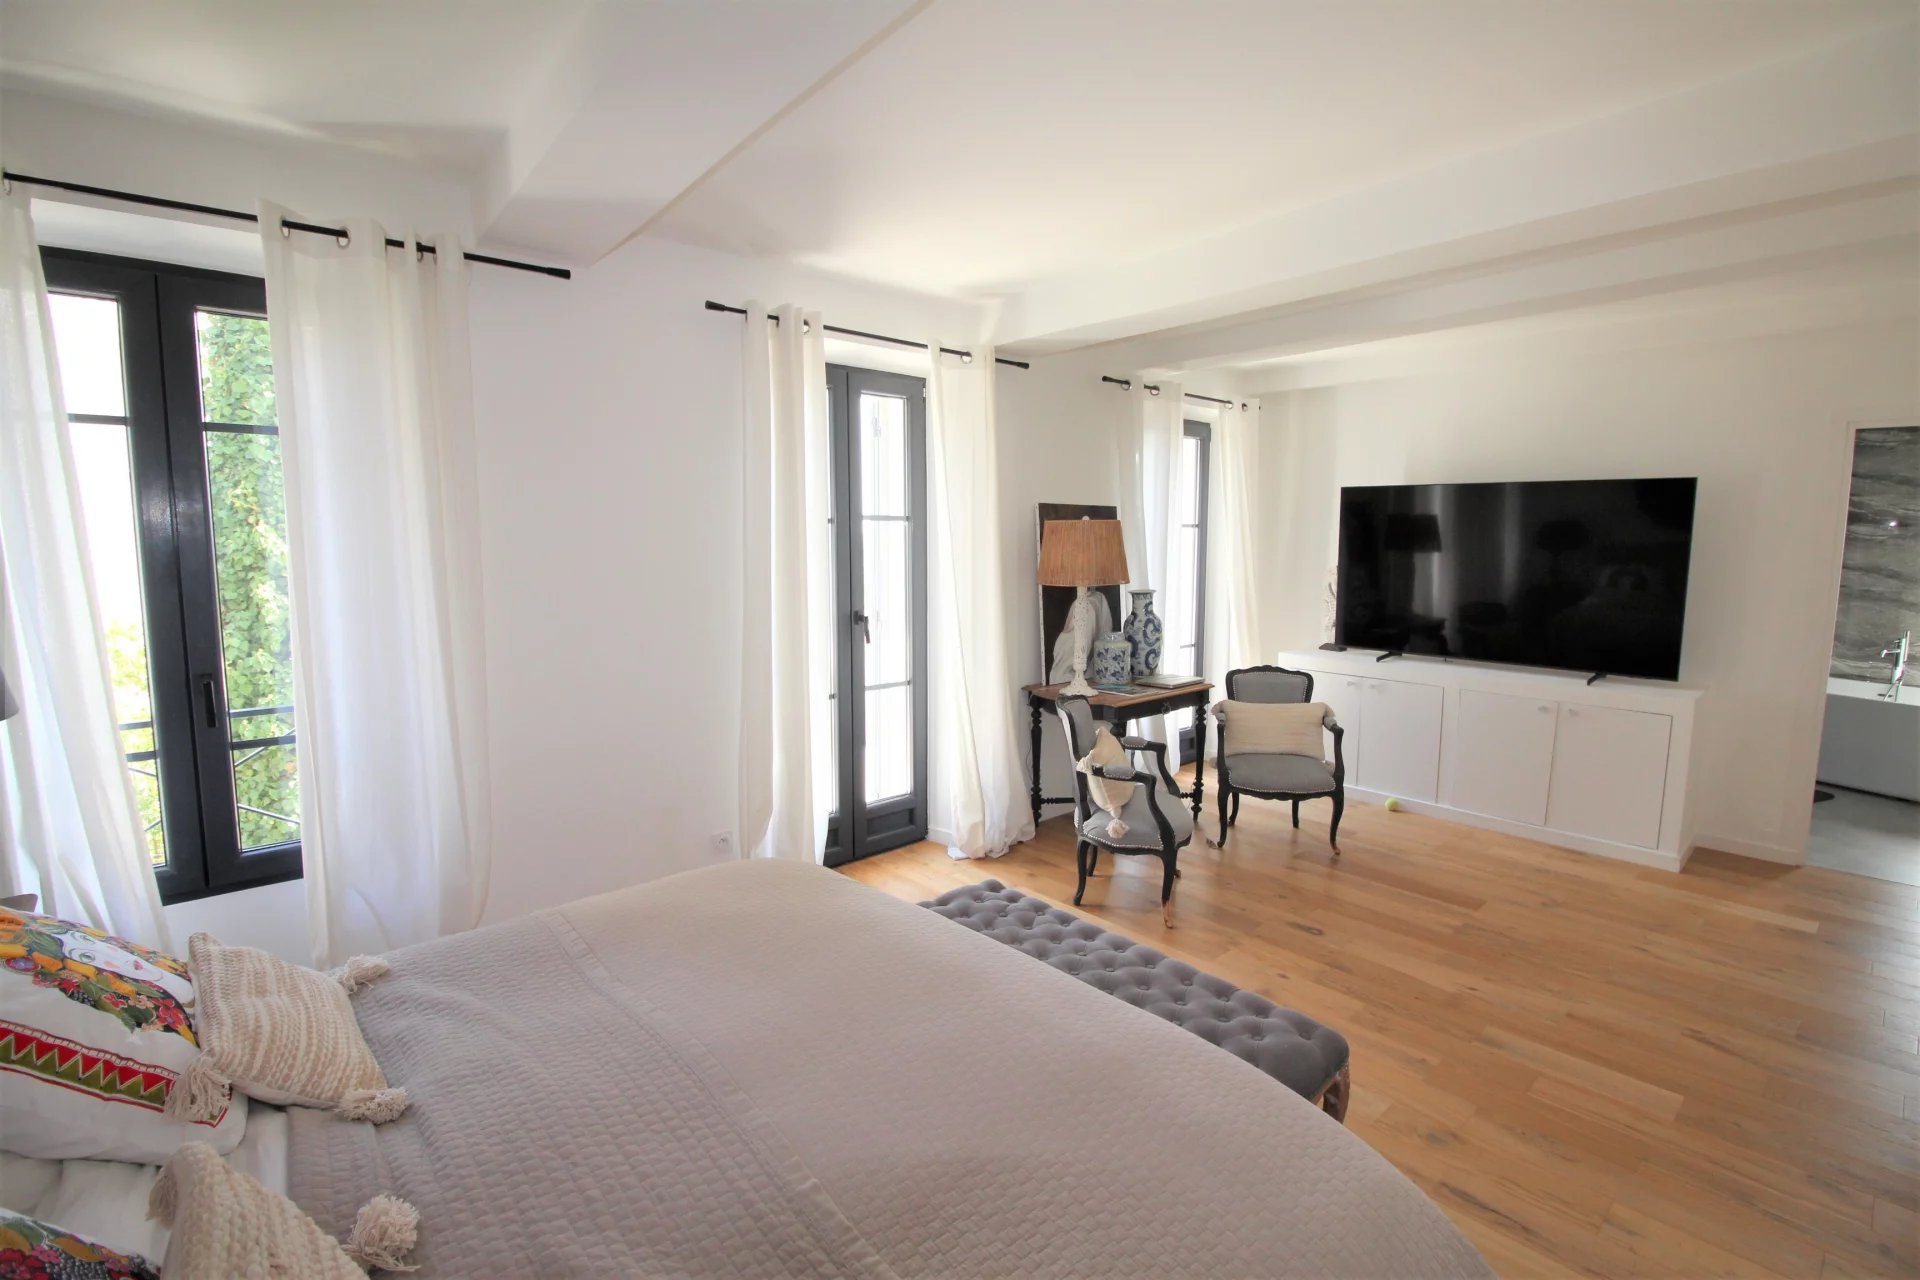 Le Cannet, résidentiel, villa de charme vue mer, 200m² env, 3 chambres, studio indépendant.